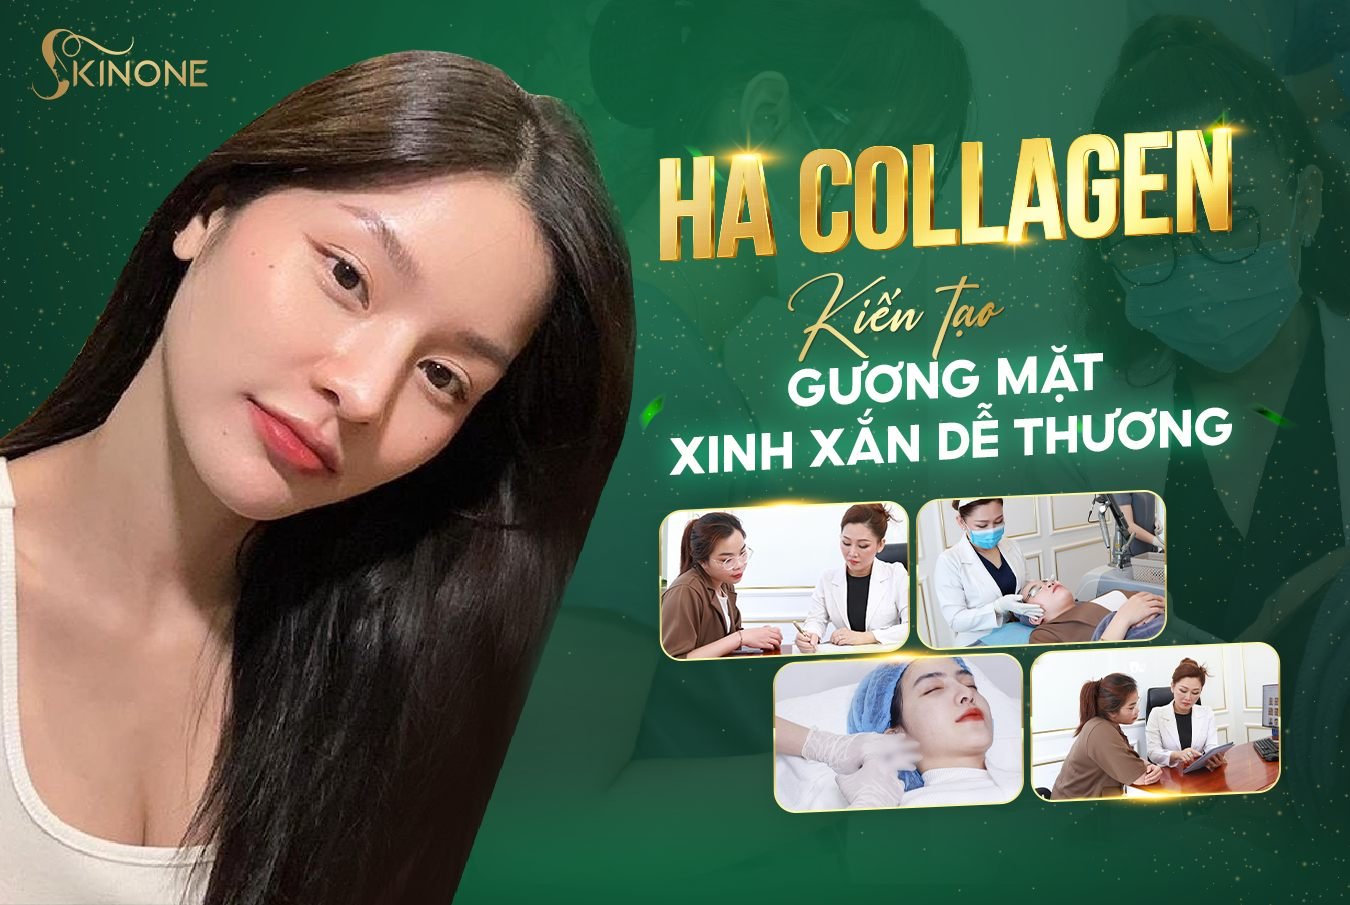 Quy trình cấy HA Collagen vùng má SkinOne